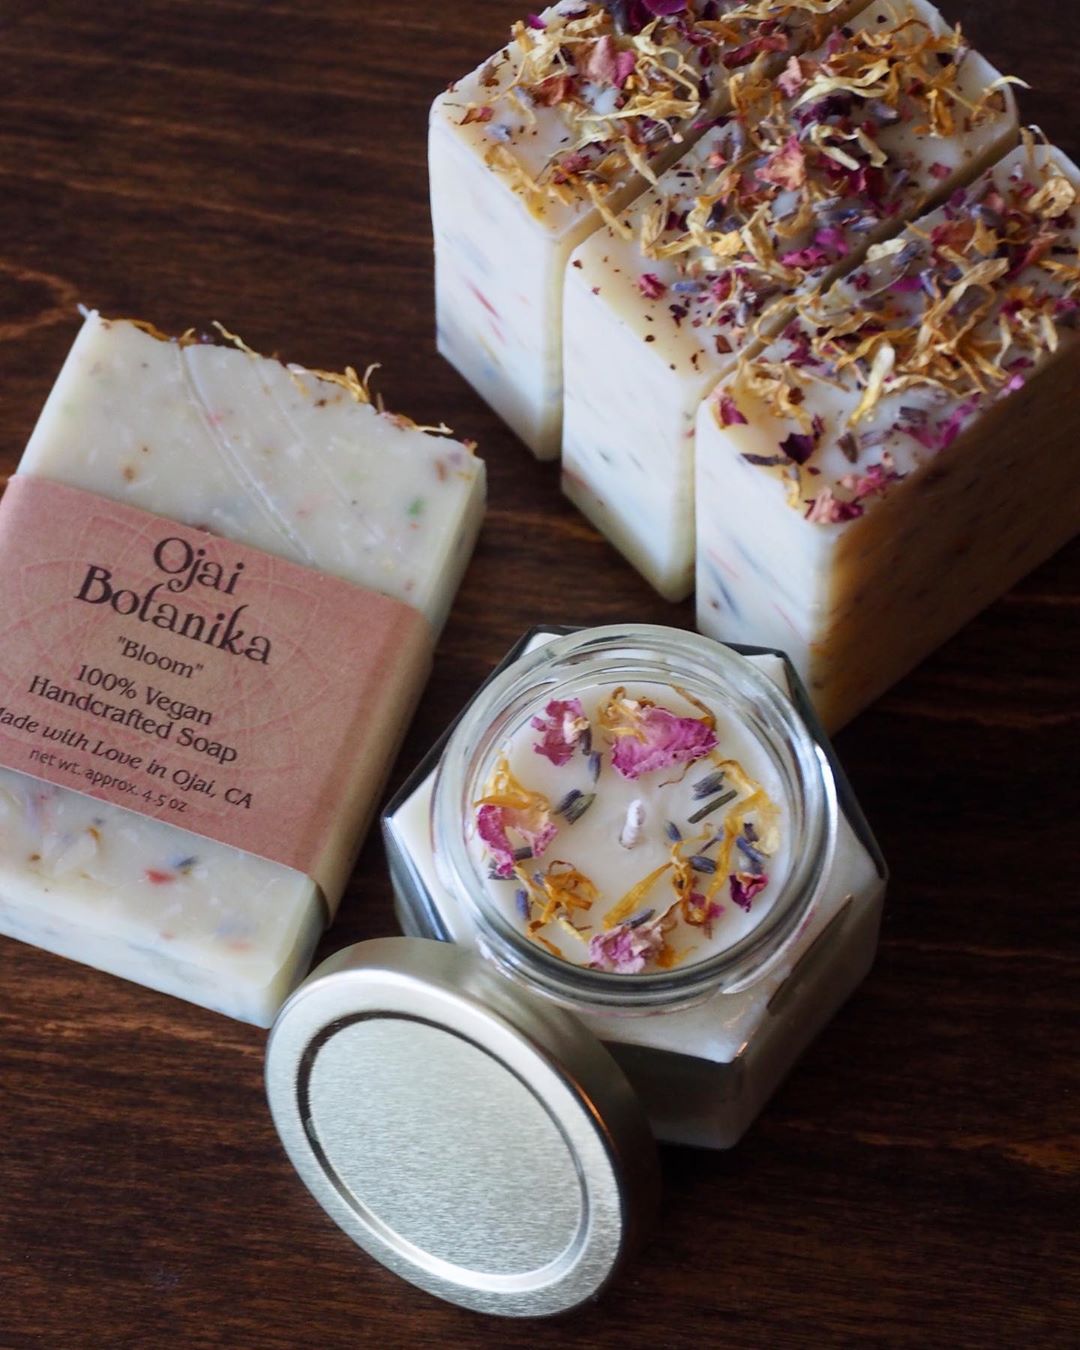 lush honey soap and candle by ojai botanika